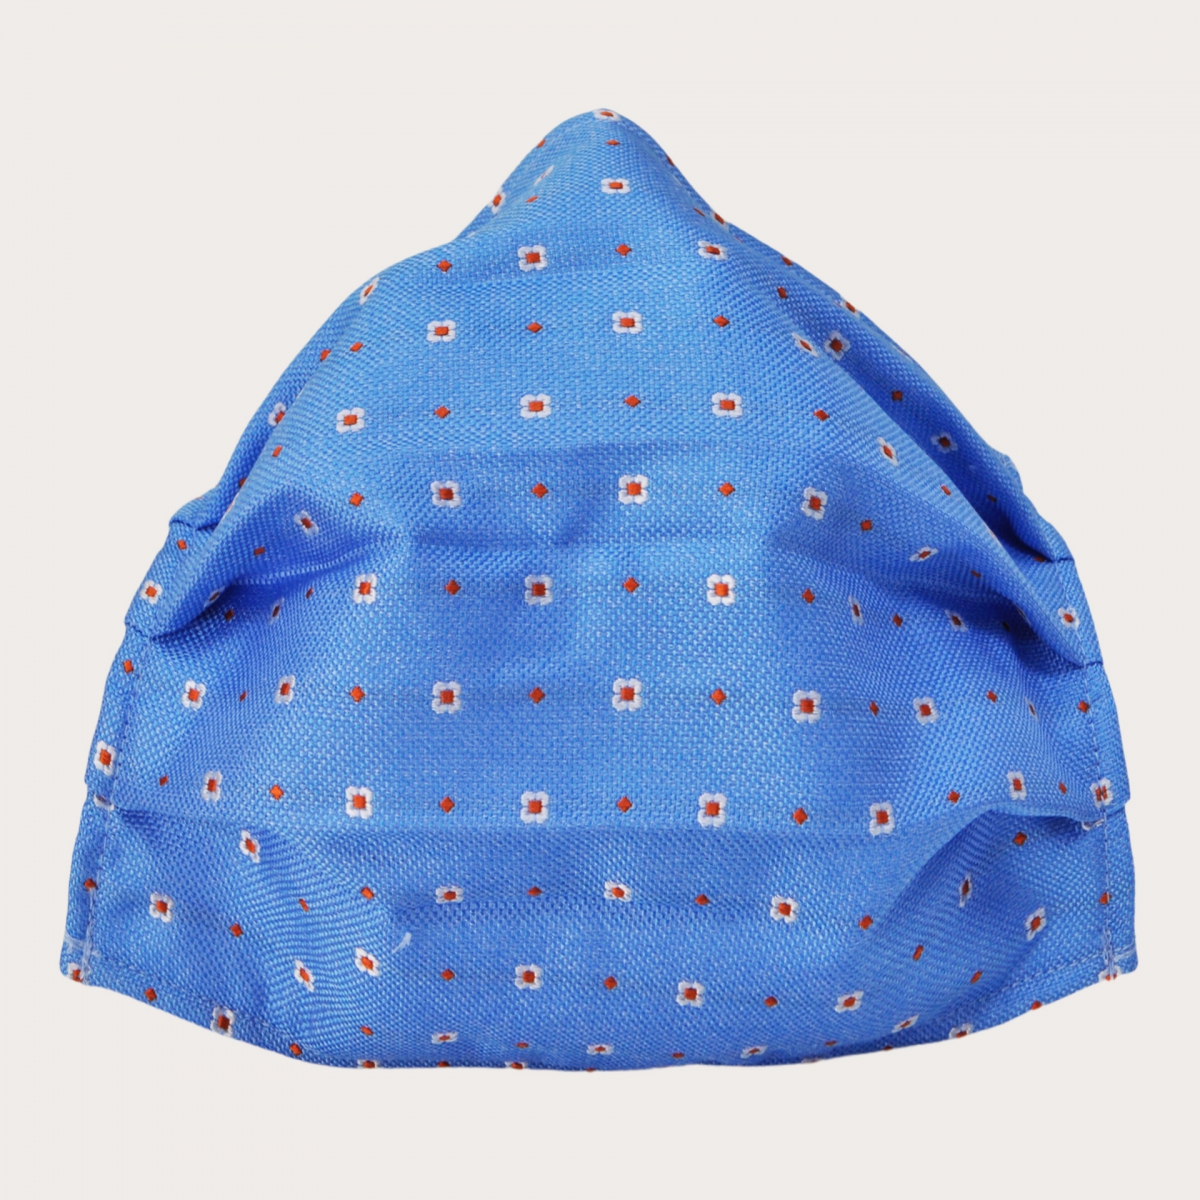 Mascarilla lavable StyleMask en seda, motivo azul claro con flores